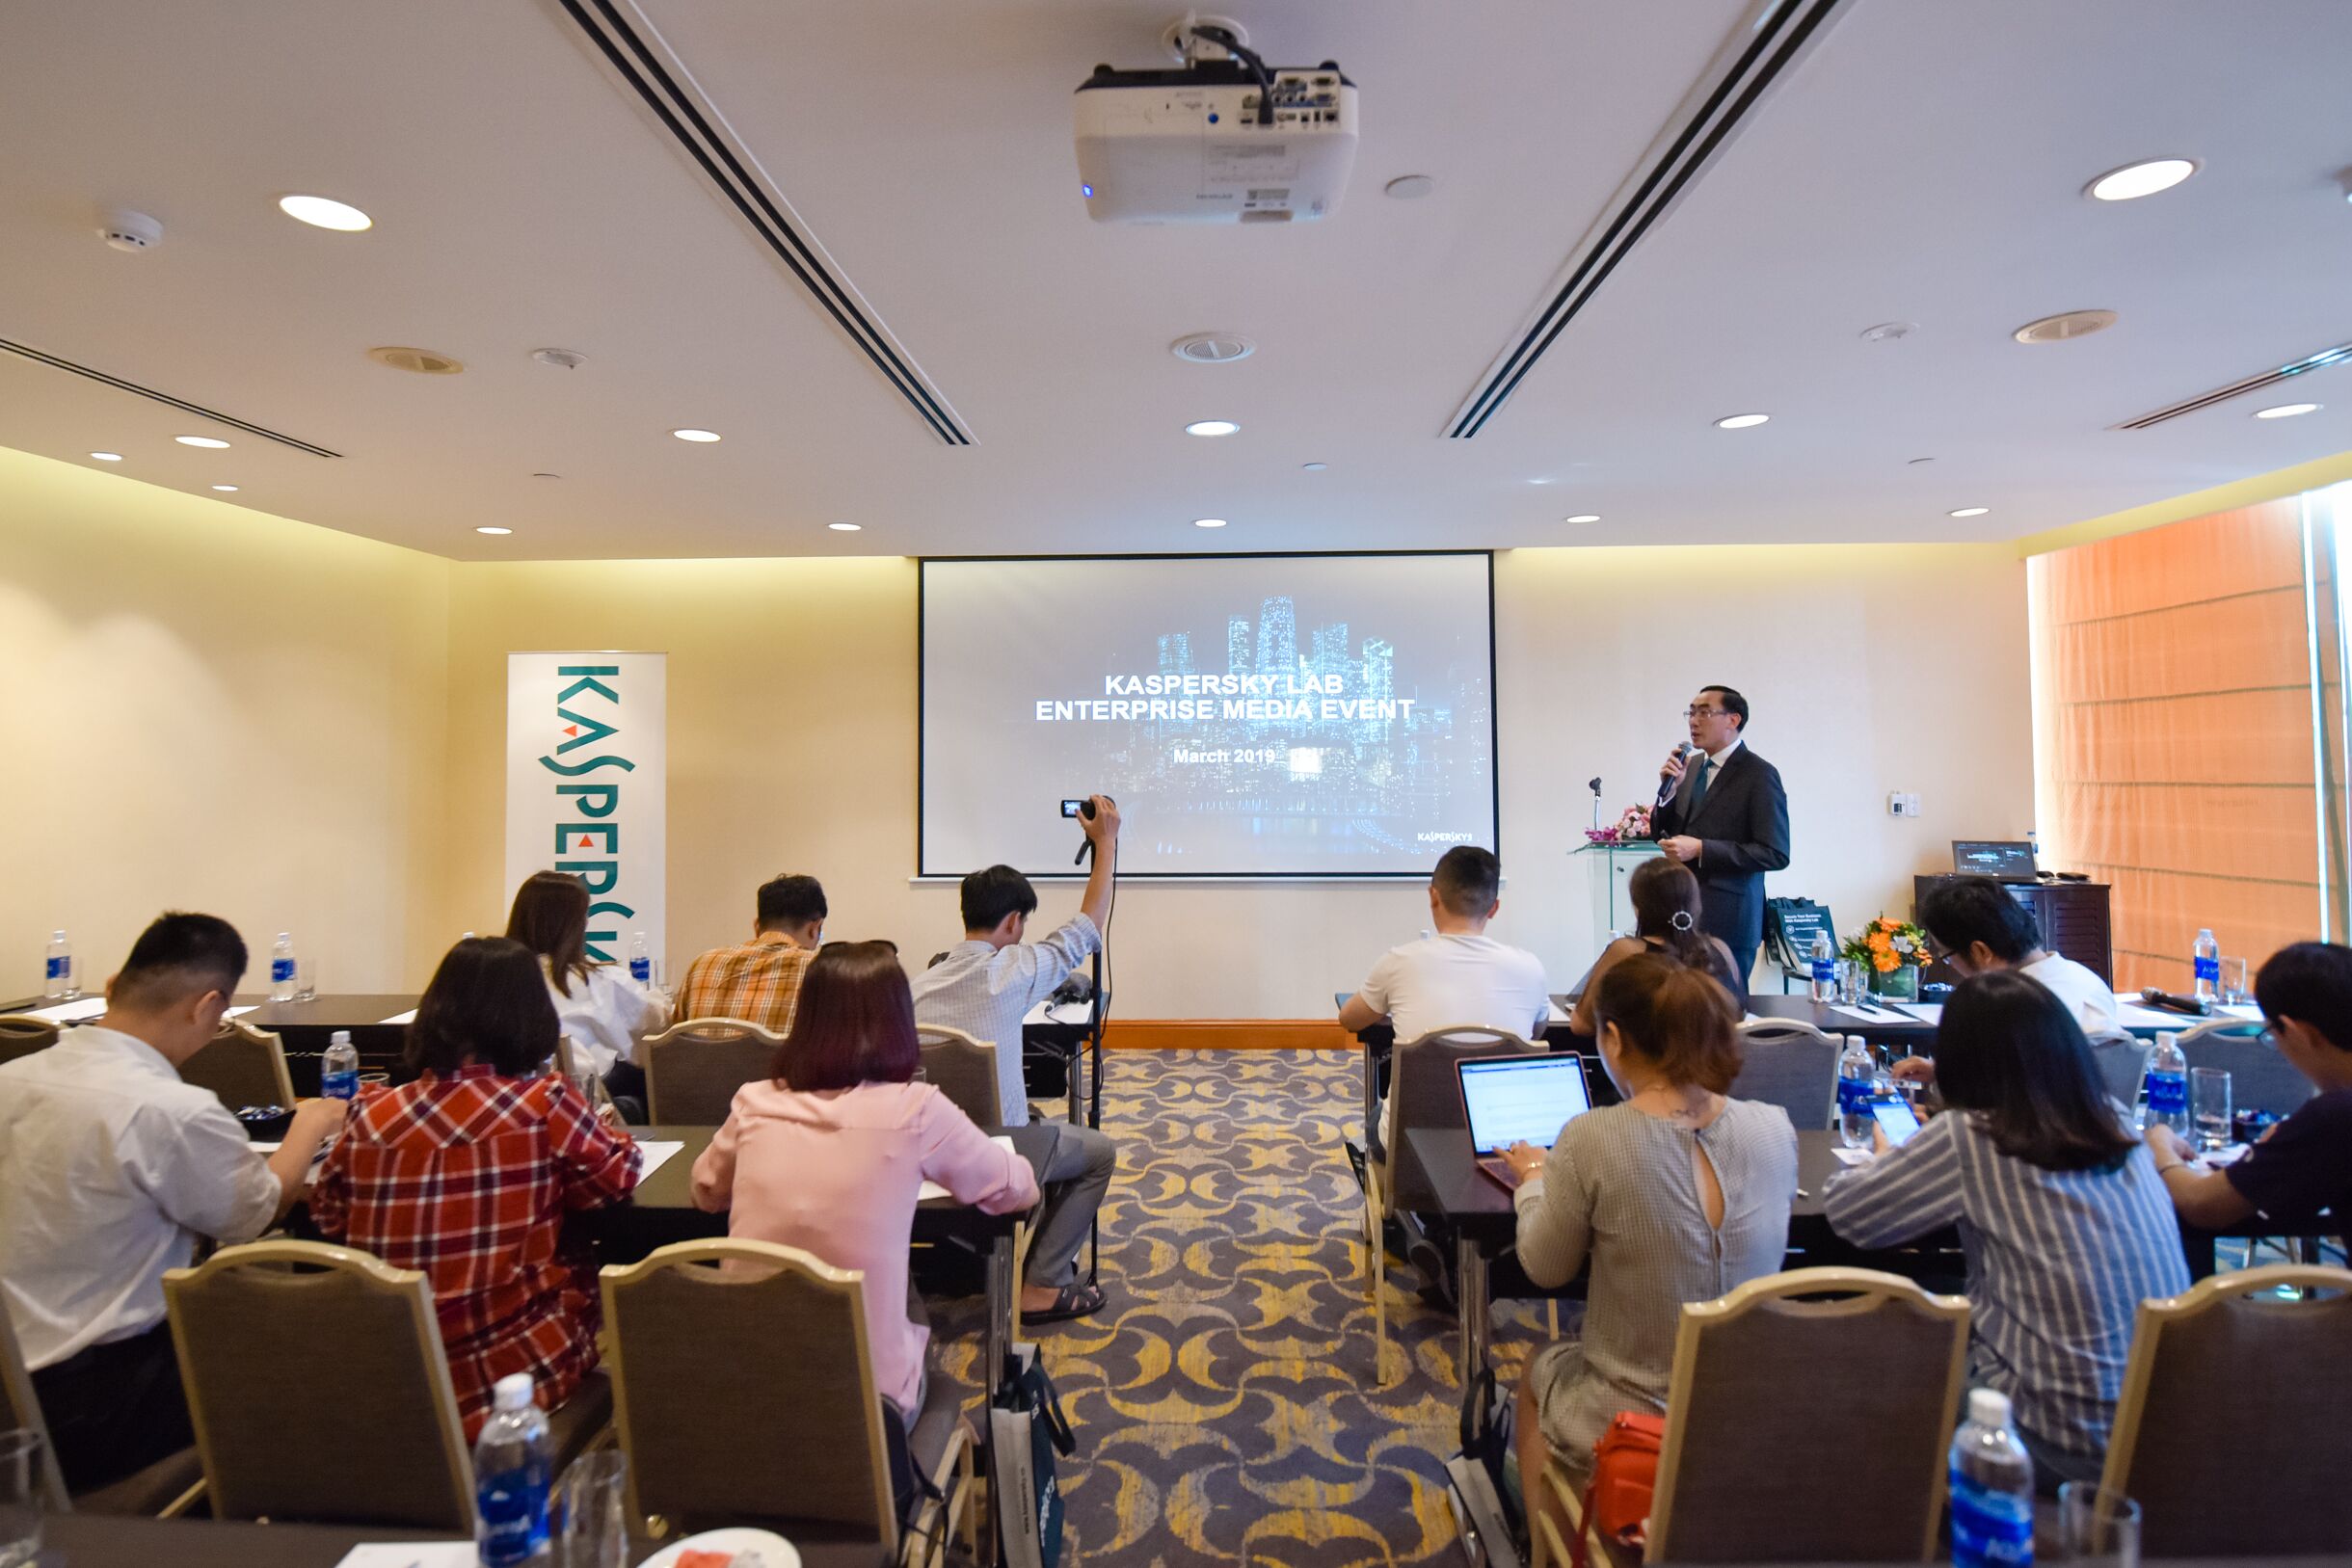 Kaspersky Lab chia sẻ trách nhiệm thúc đẩy an ninh mạng tại Việt Nam